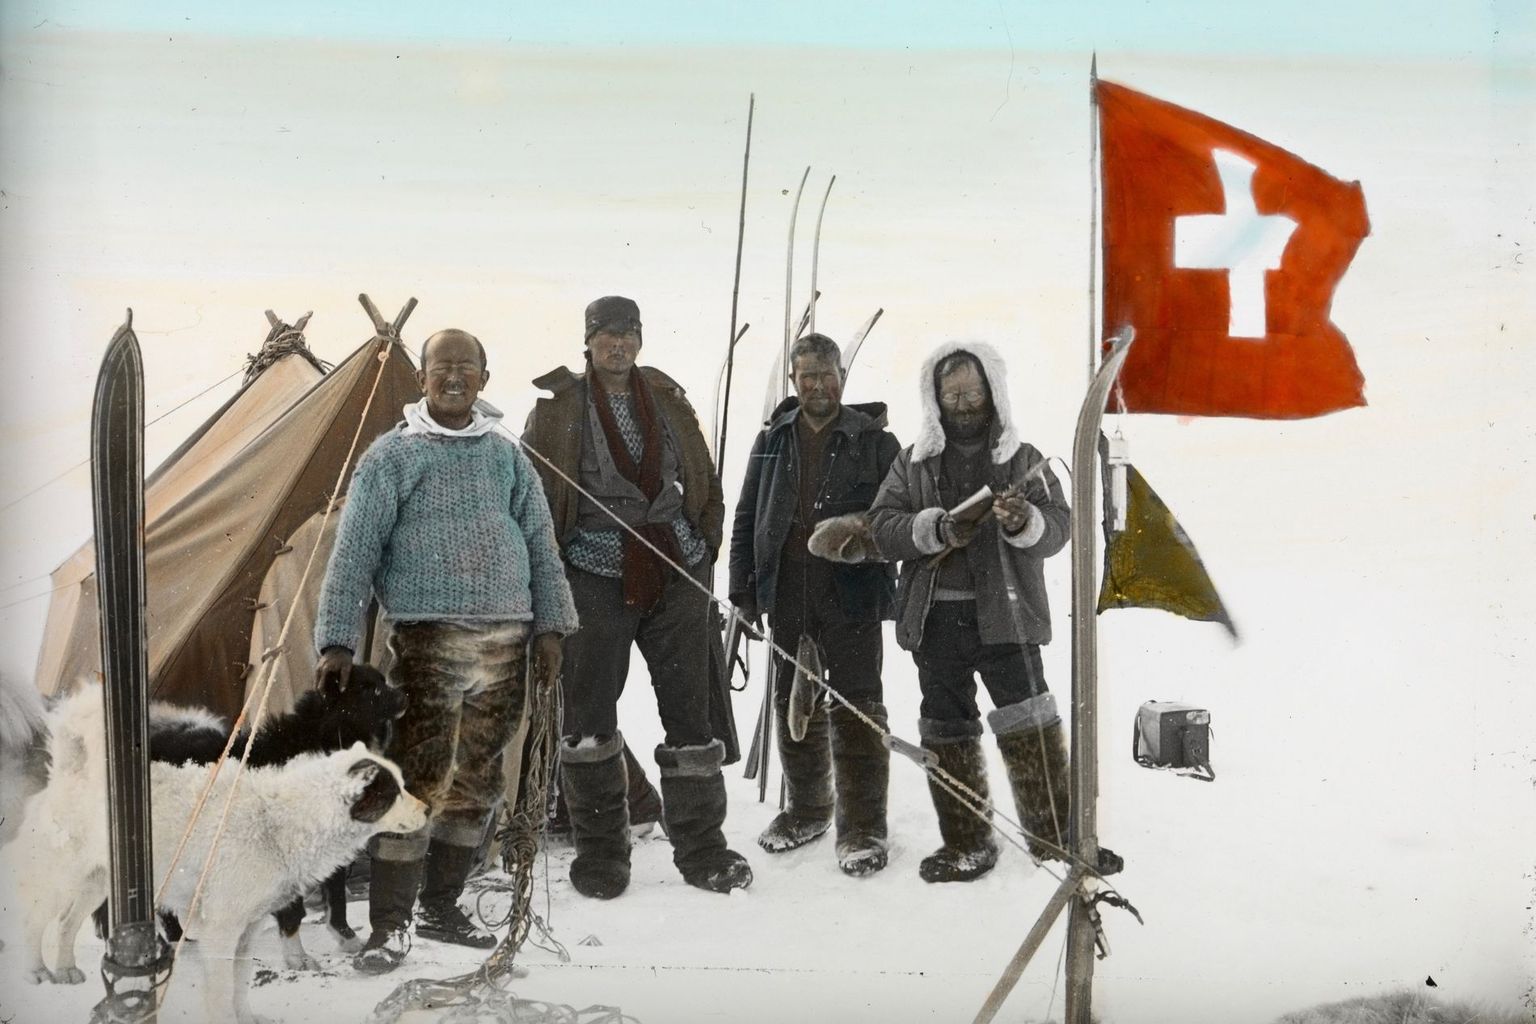 Forschungsexpedition in Grönland